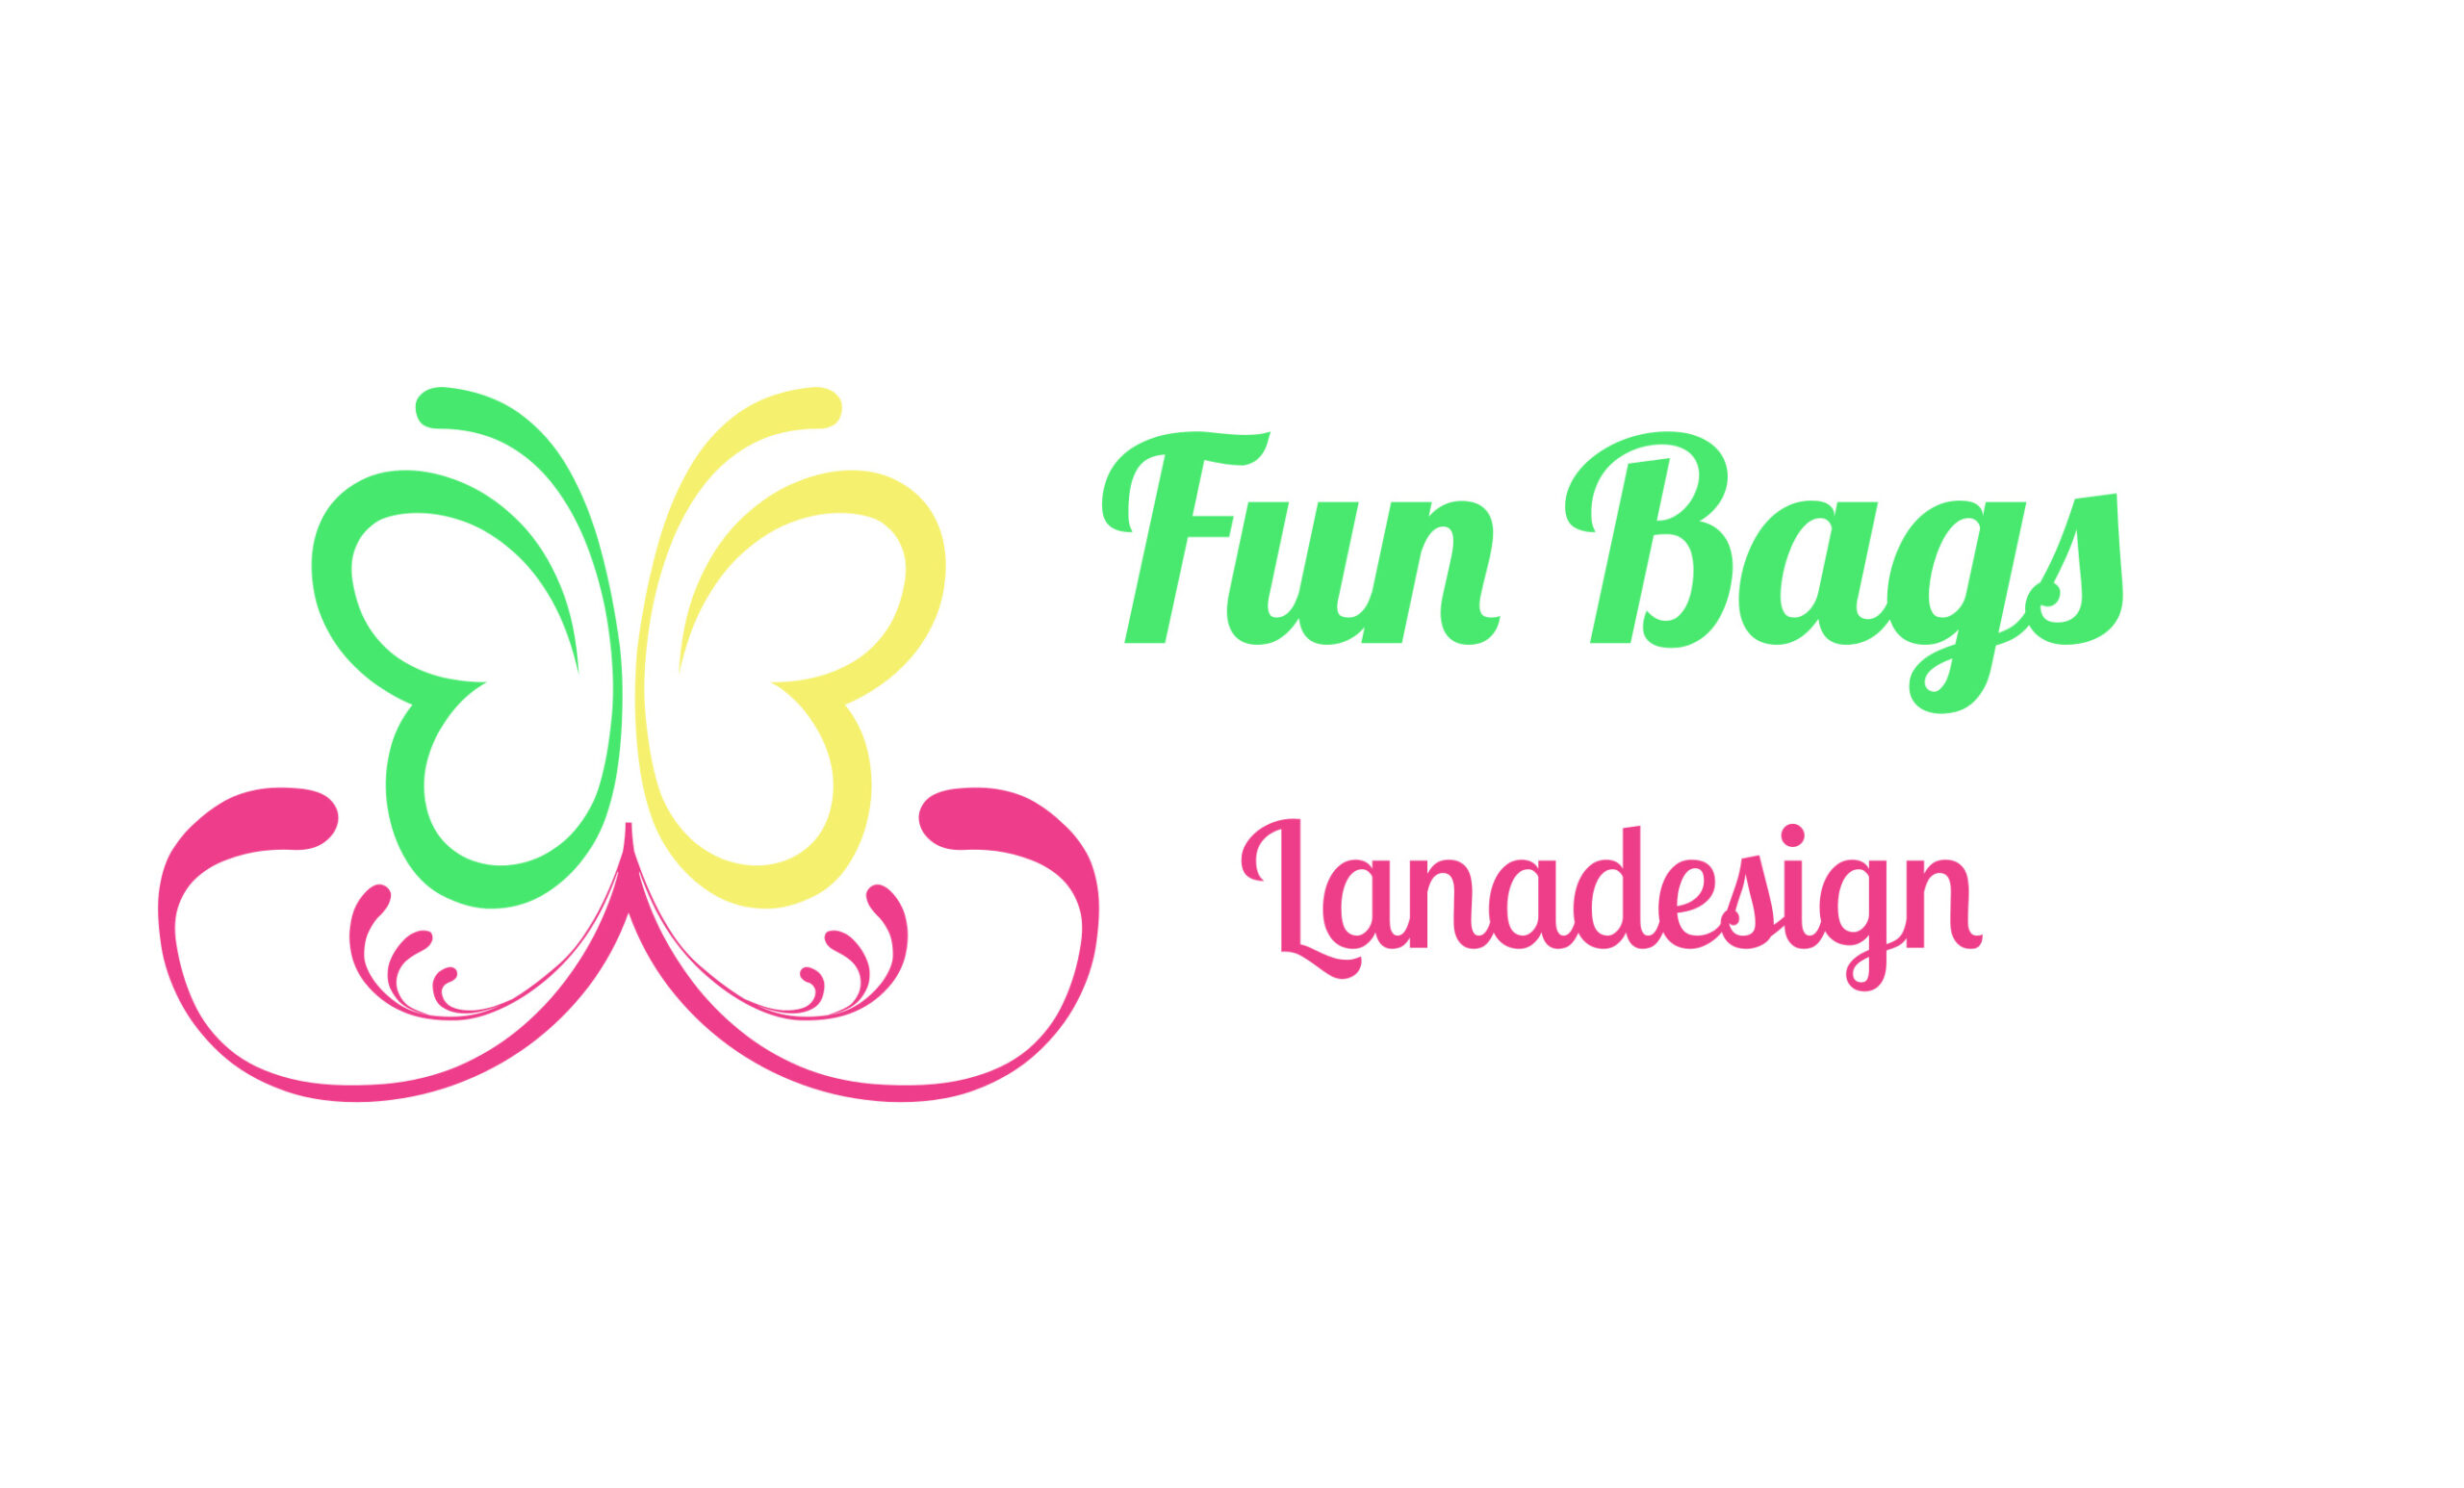 Lanadesign-‘Fun Bags’